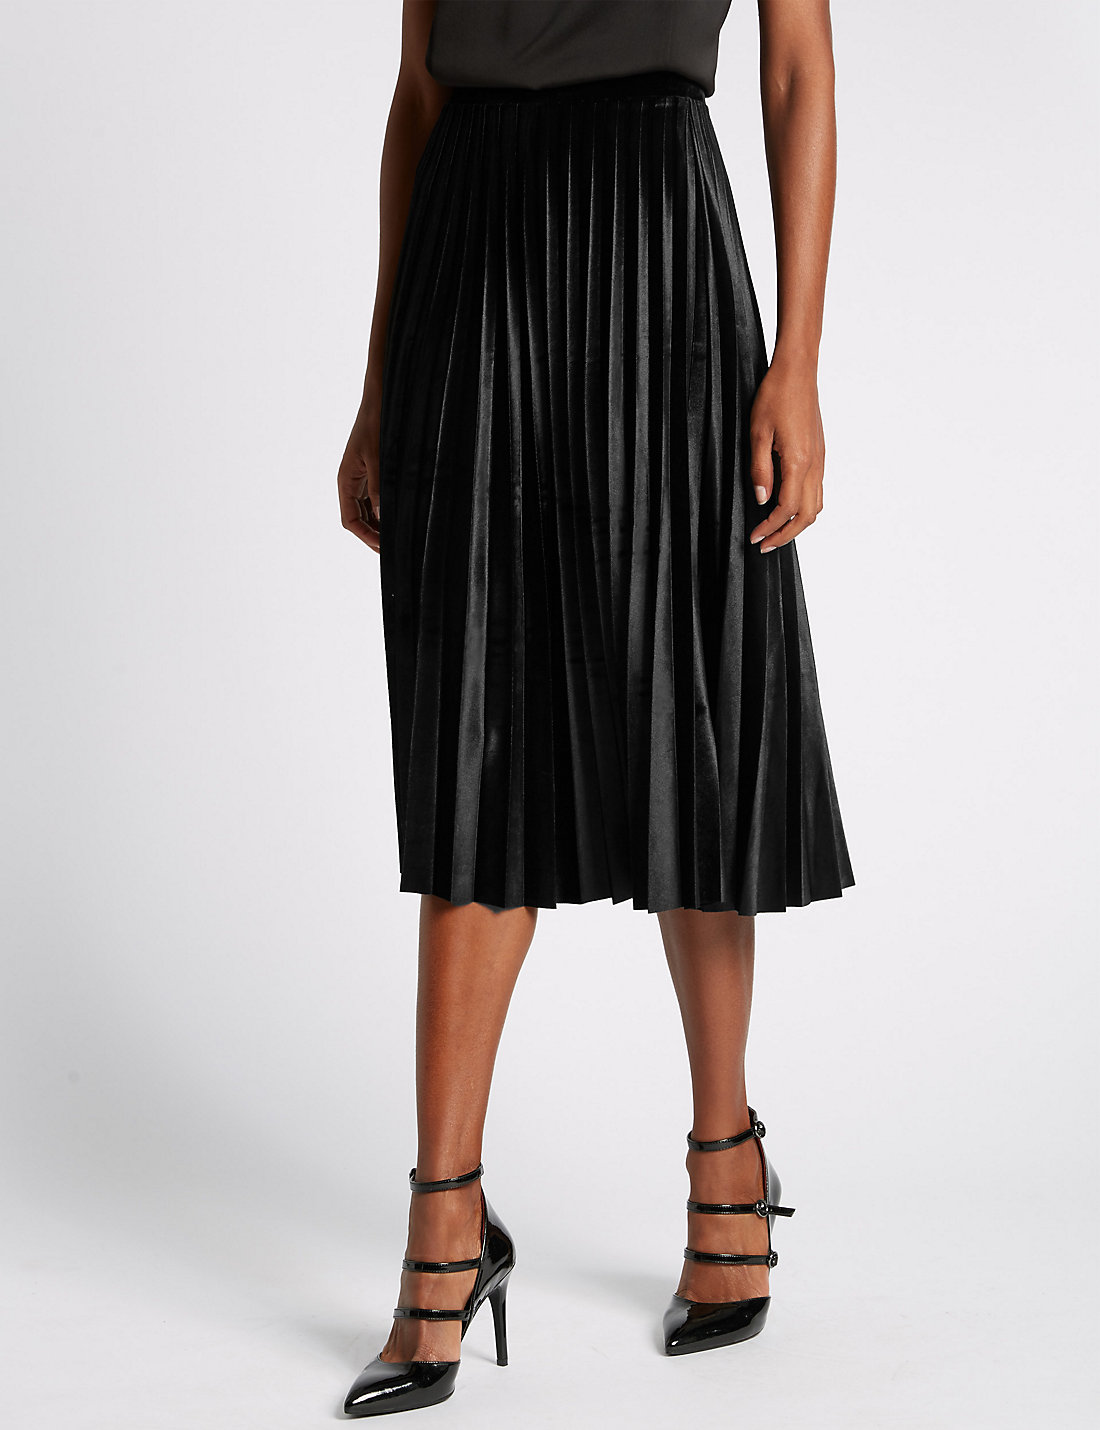 Satchel: M&S Velvet Pleated Skirt